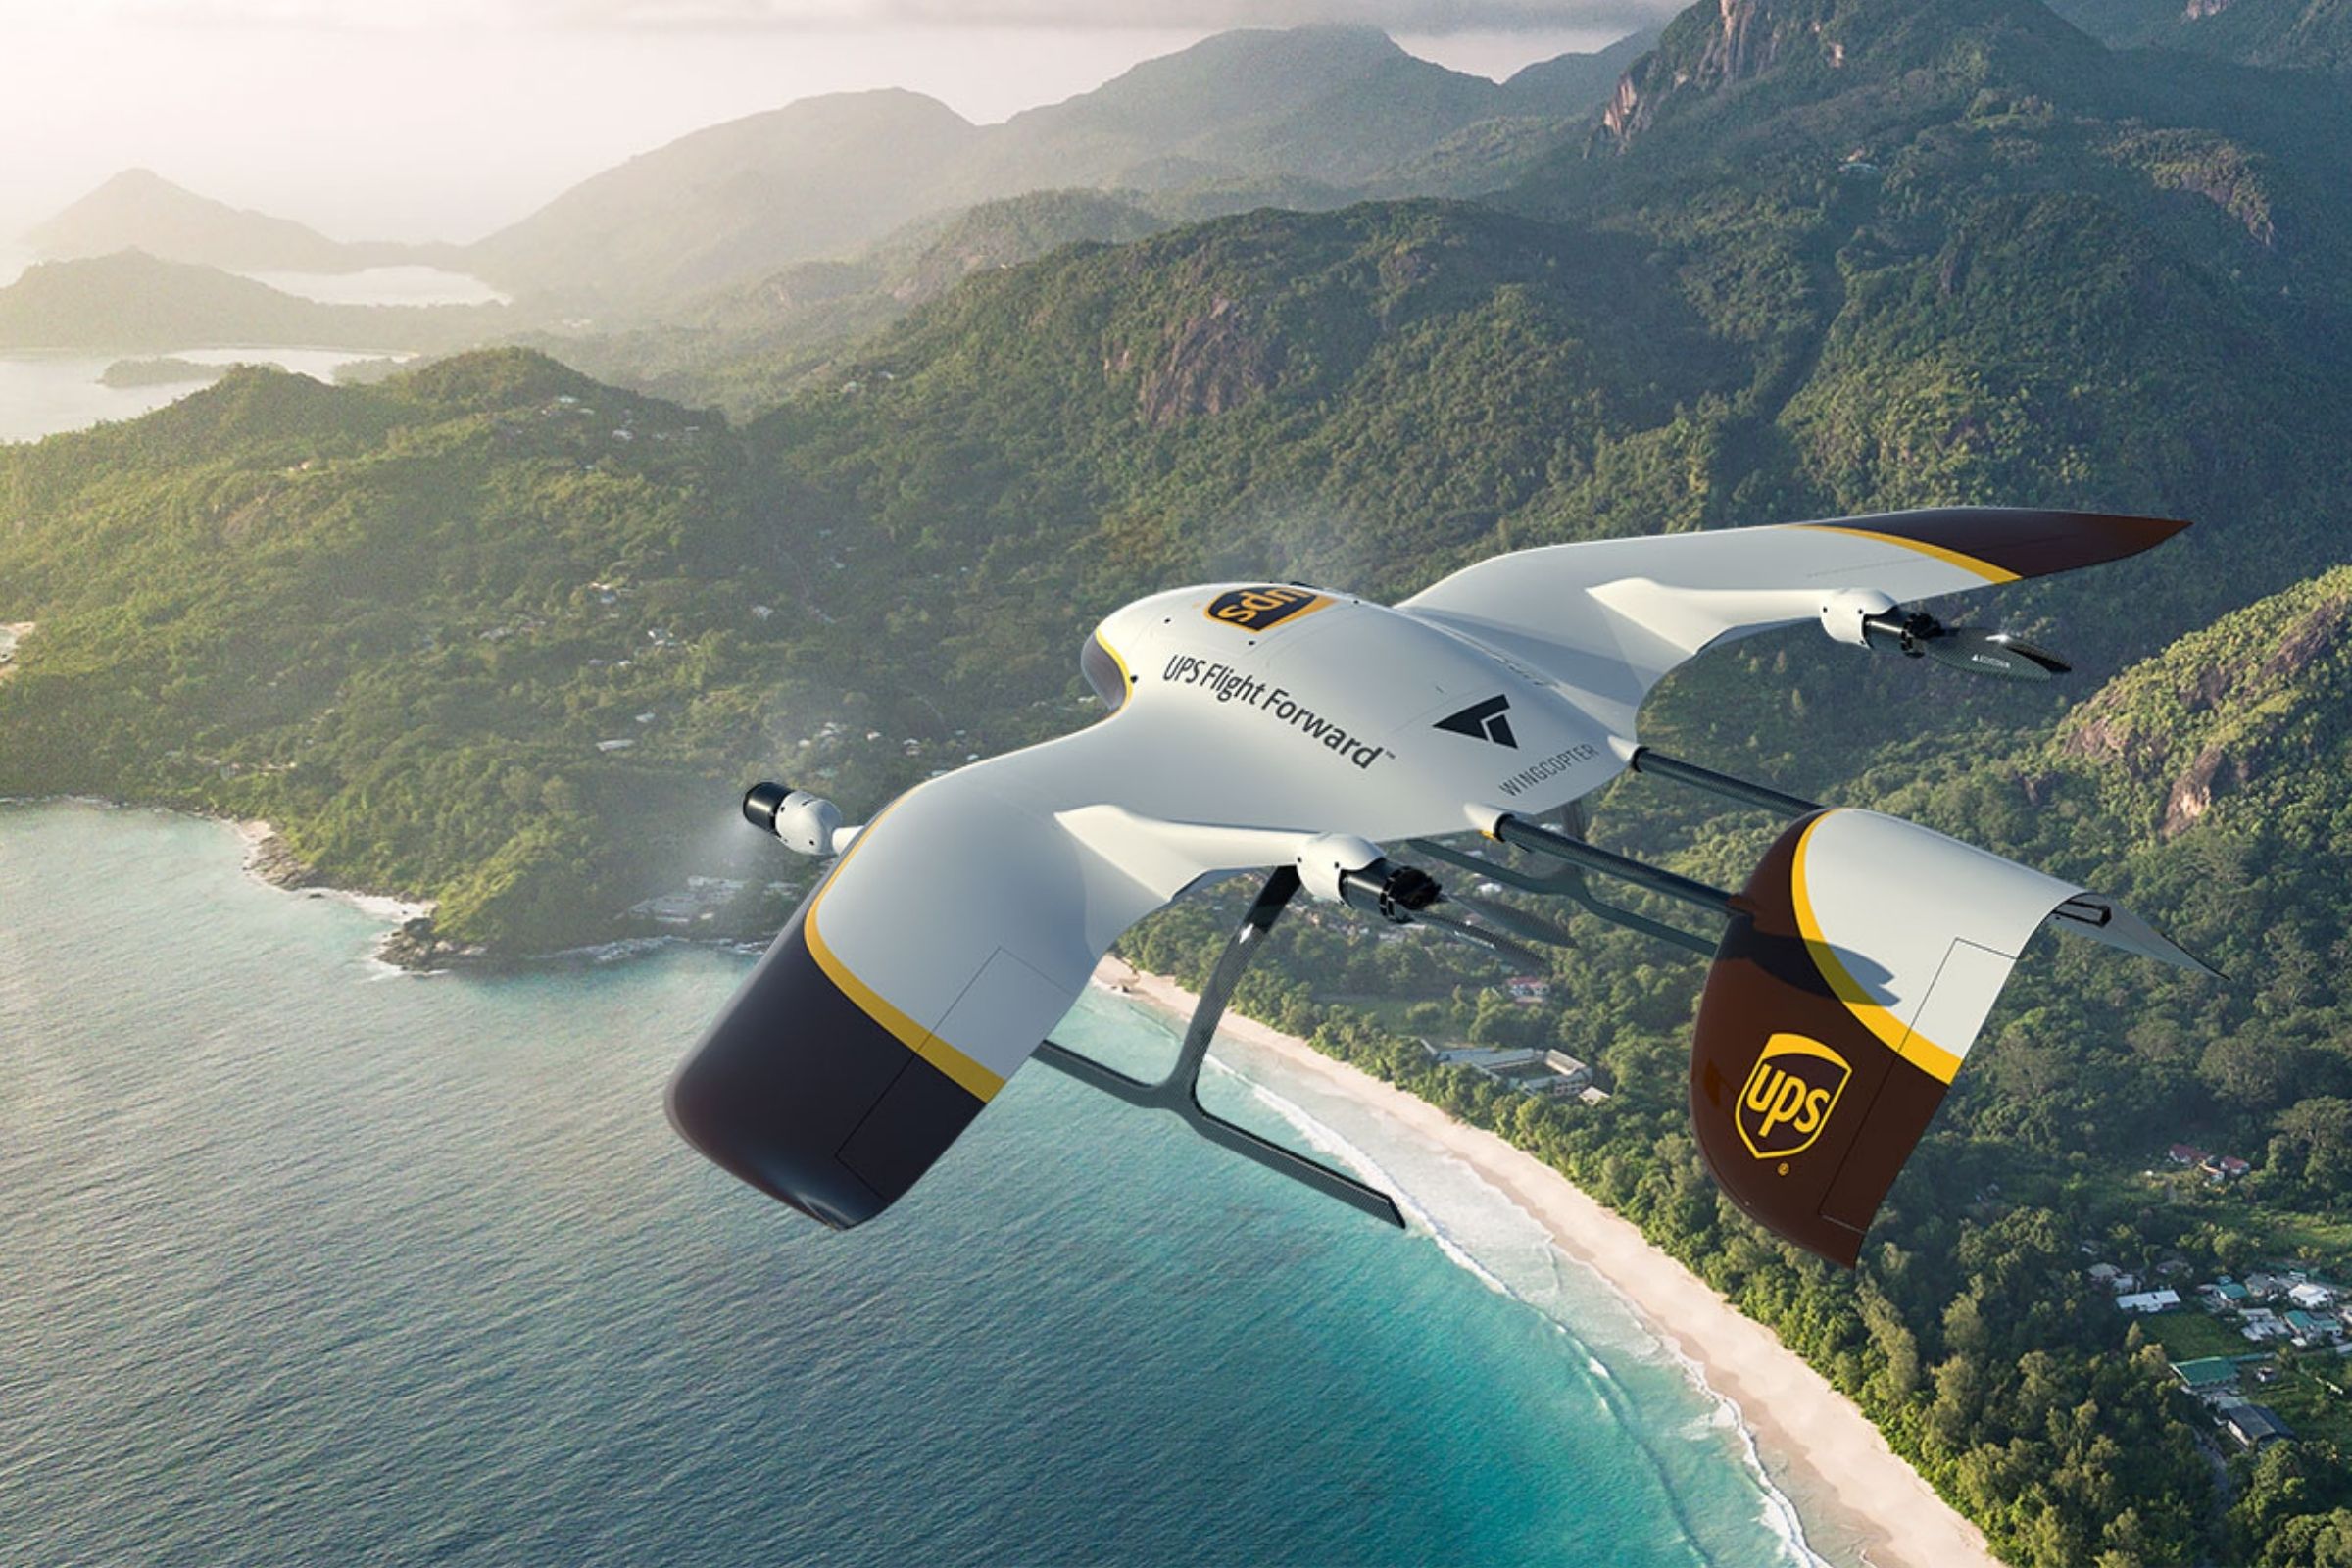 Wingcopter drony dostarczające paczki